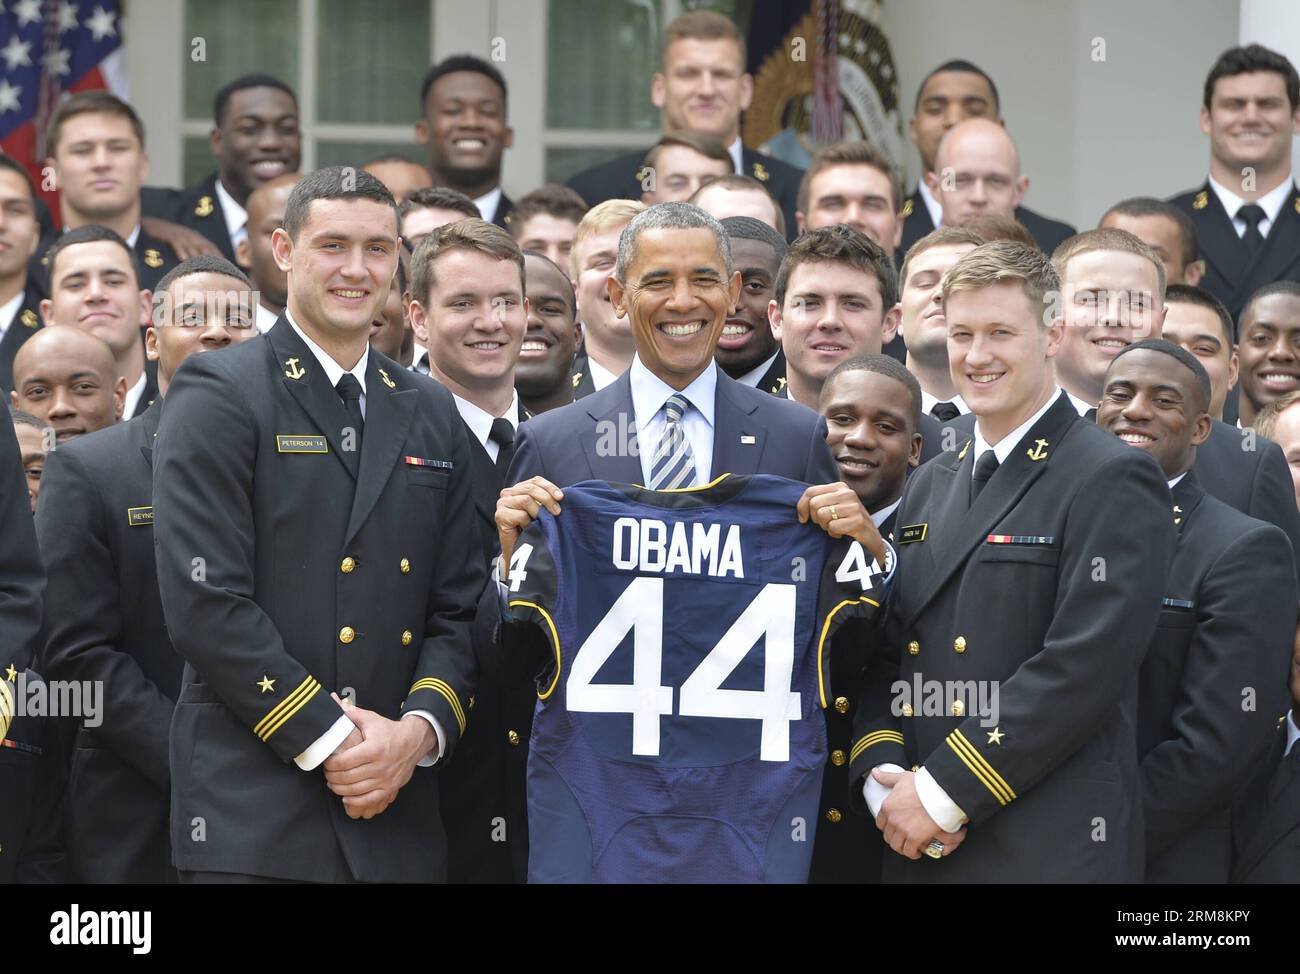 Le président AMÉRICAIN Barack Obama montre un maillot cadeau alors qu’il pose lors de la remise du trophée Commander-in-Chief à l’équipe de football de l’Académie navale américaine à la Maison Blanche à Washington le 18 avril 2014. (Xinhua/Bao Dandan) US-WASHINGTON-OBAMA-NAVY FOOTBALL TEAM PUBLICATIONxNOTxINxCHN le président américain Barack Obama montre un maillot poison alors qu'il pose lors de la PRÉSENTATION du trophée Commander en chef à l'équipe de football de l'Académie navale américaine À la Maison Blanche à Washington avril 18 2014 XINHUA Bao Dandan U.S. Washington Obama Navy football Team PUBLICATIONxNOTxINxCHN Banque D'Images